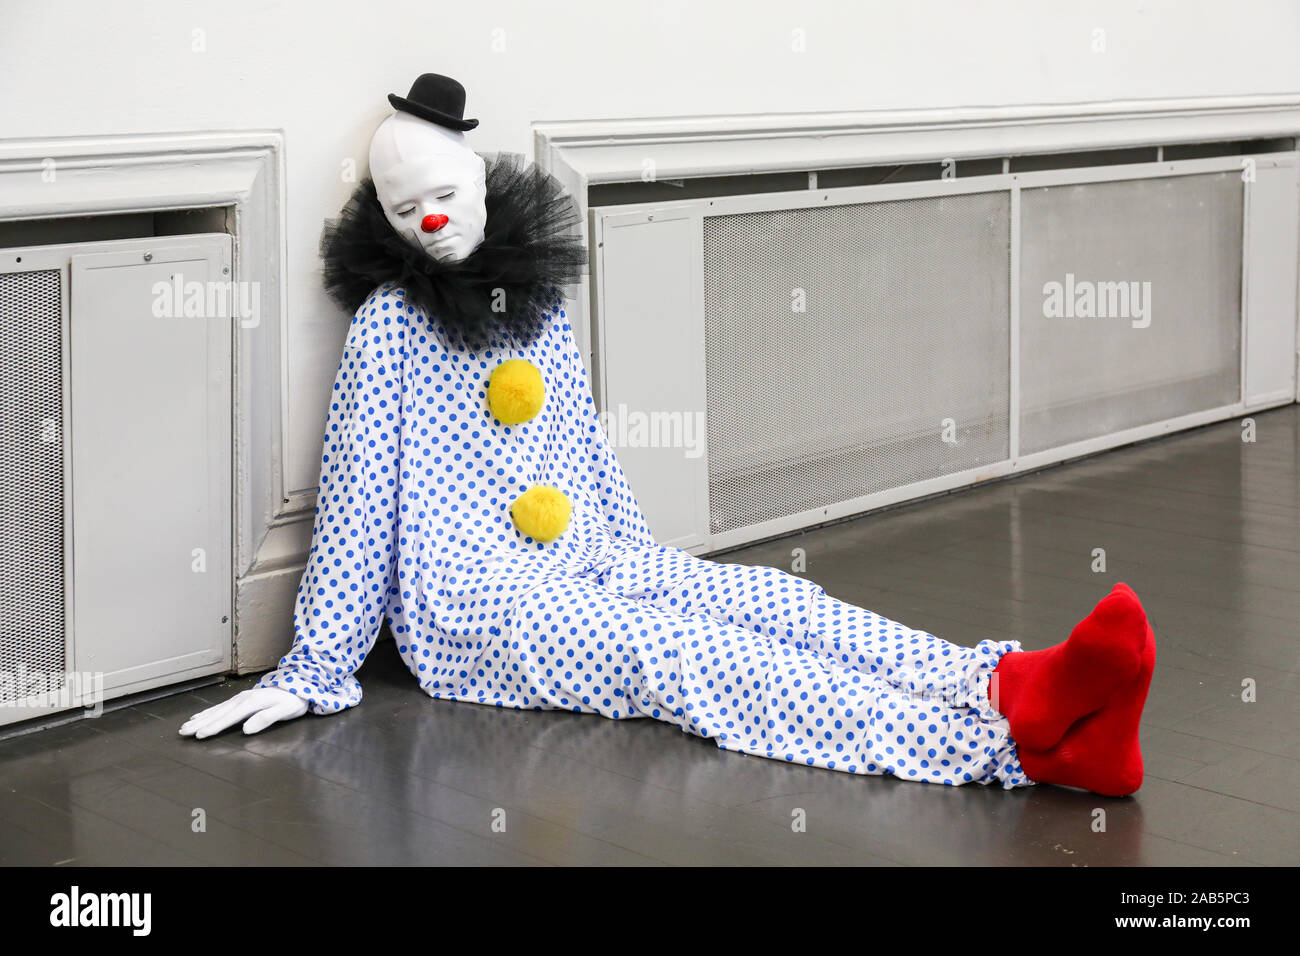 Iper-realistico clown scultura a 'everone diventa più chiara' o 'Vocabolario di solitudine" mostra di arte contemporanea da Ugo Rondinone a Helsinki Foto Stock